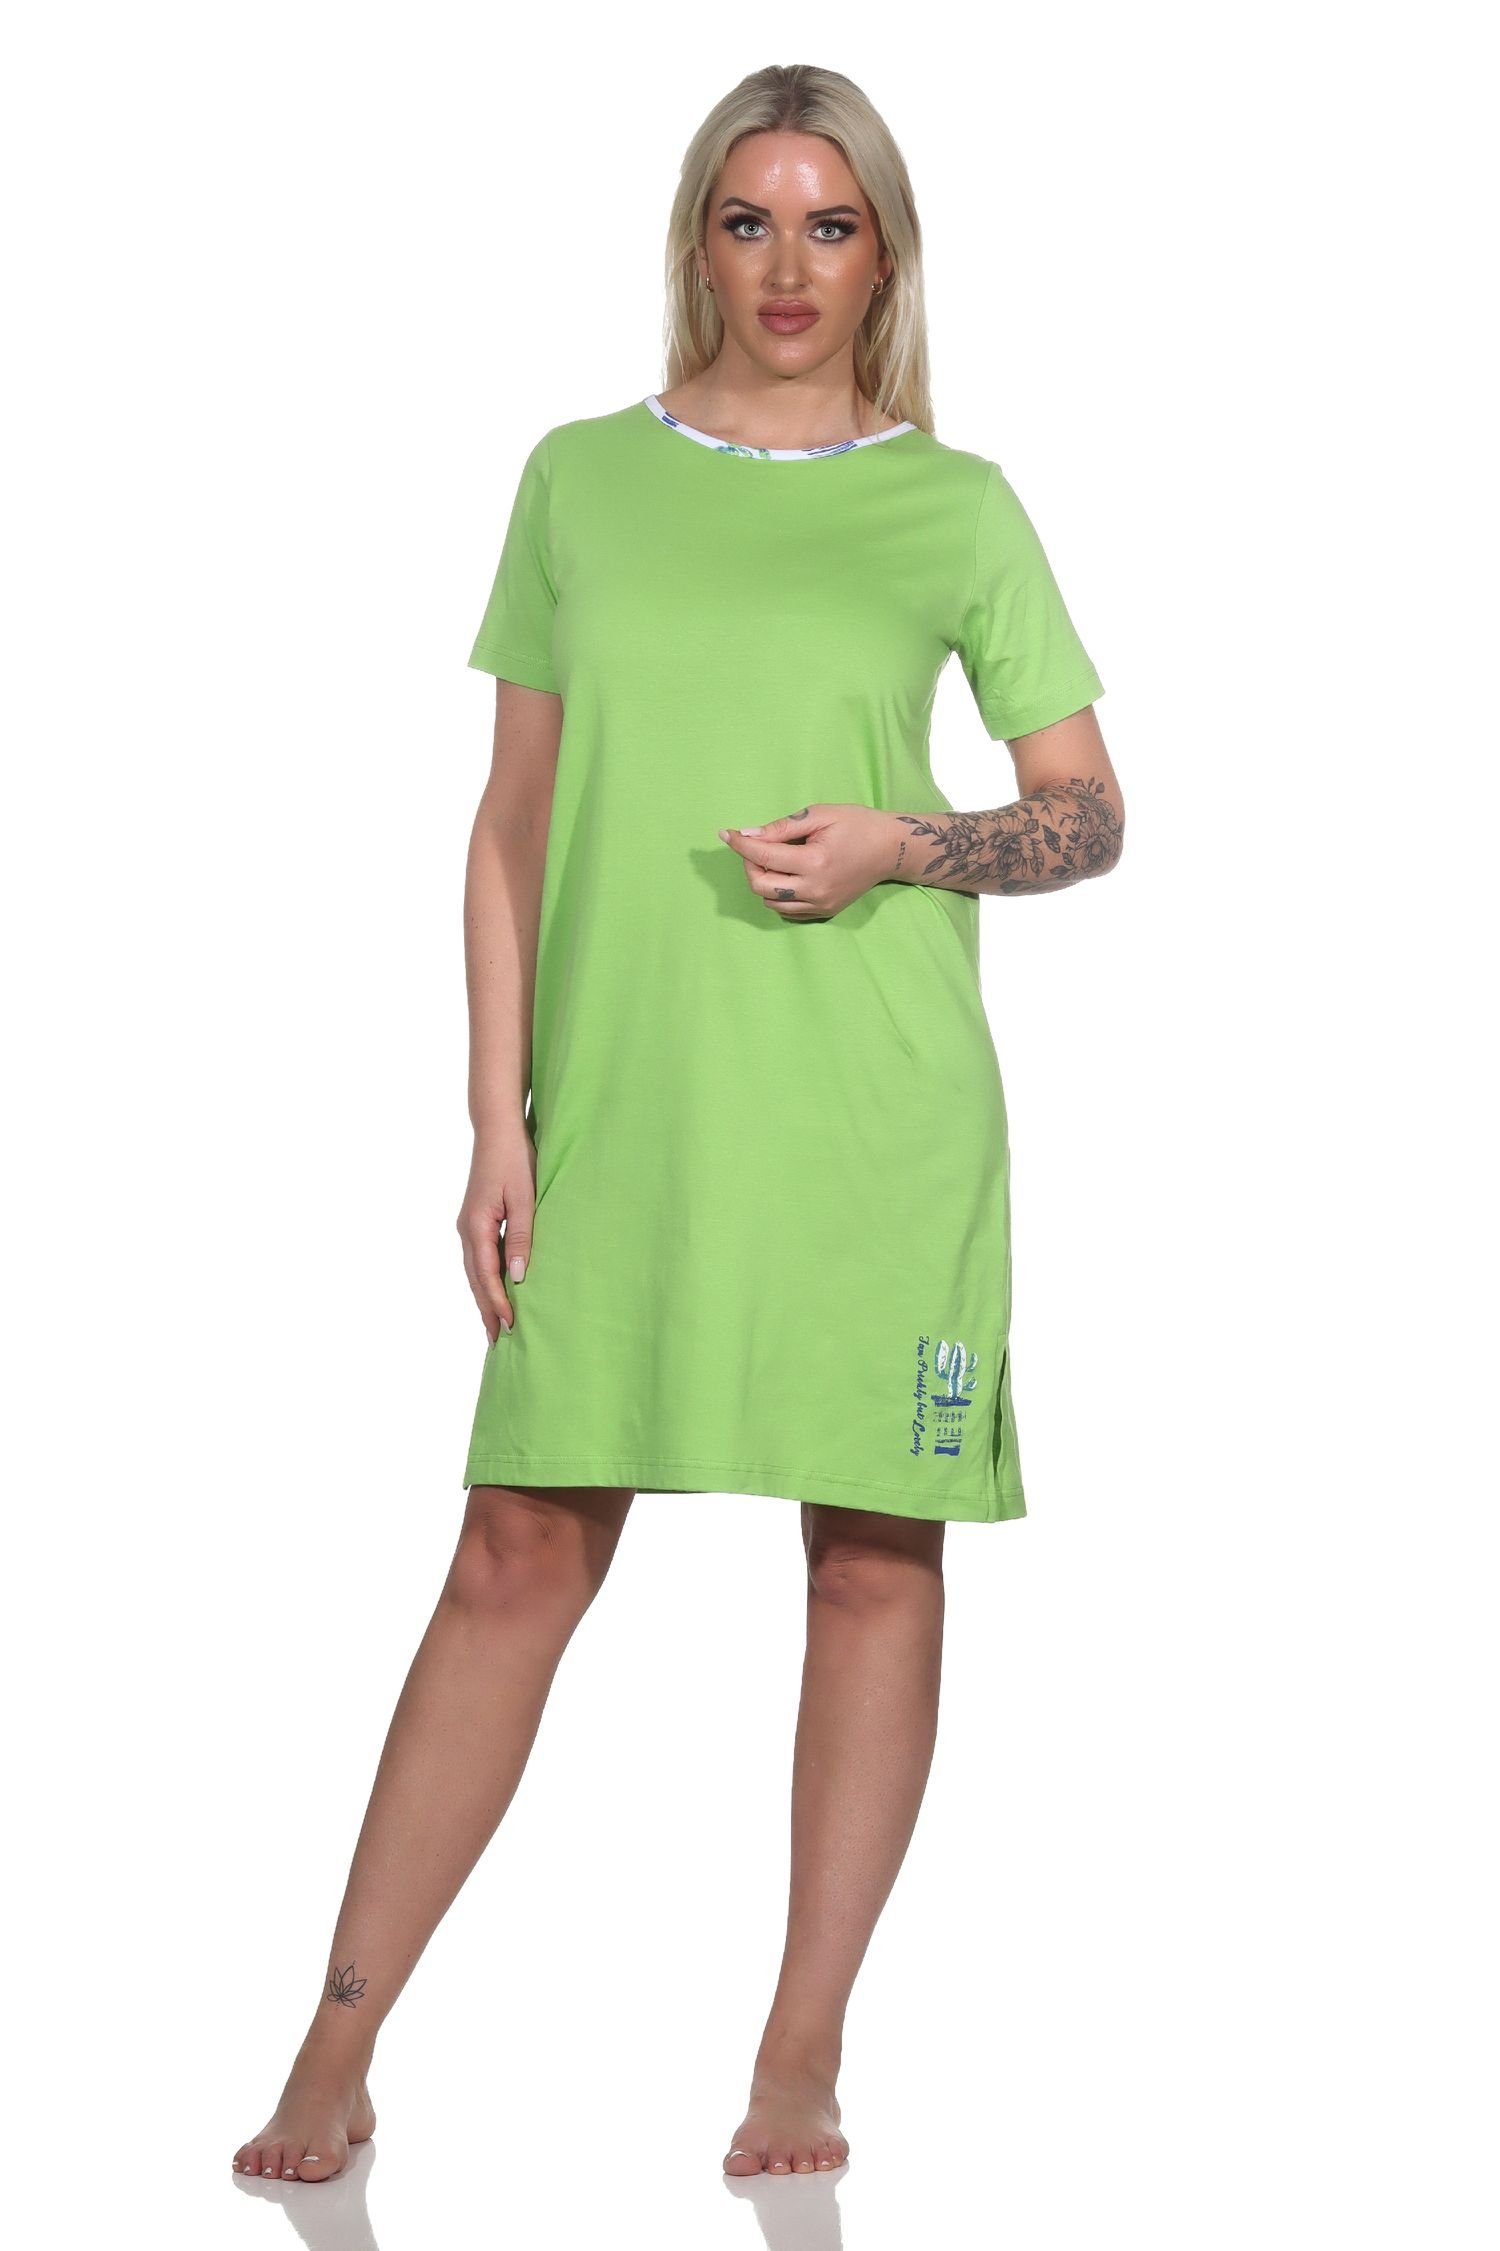 Normann Nachthemd Damen kurzarm Nachthemd grün mit als Kaktus Motiv